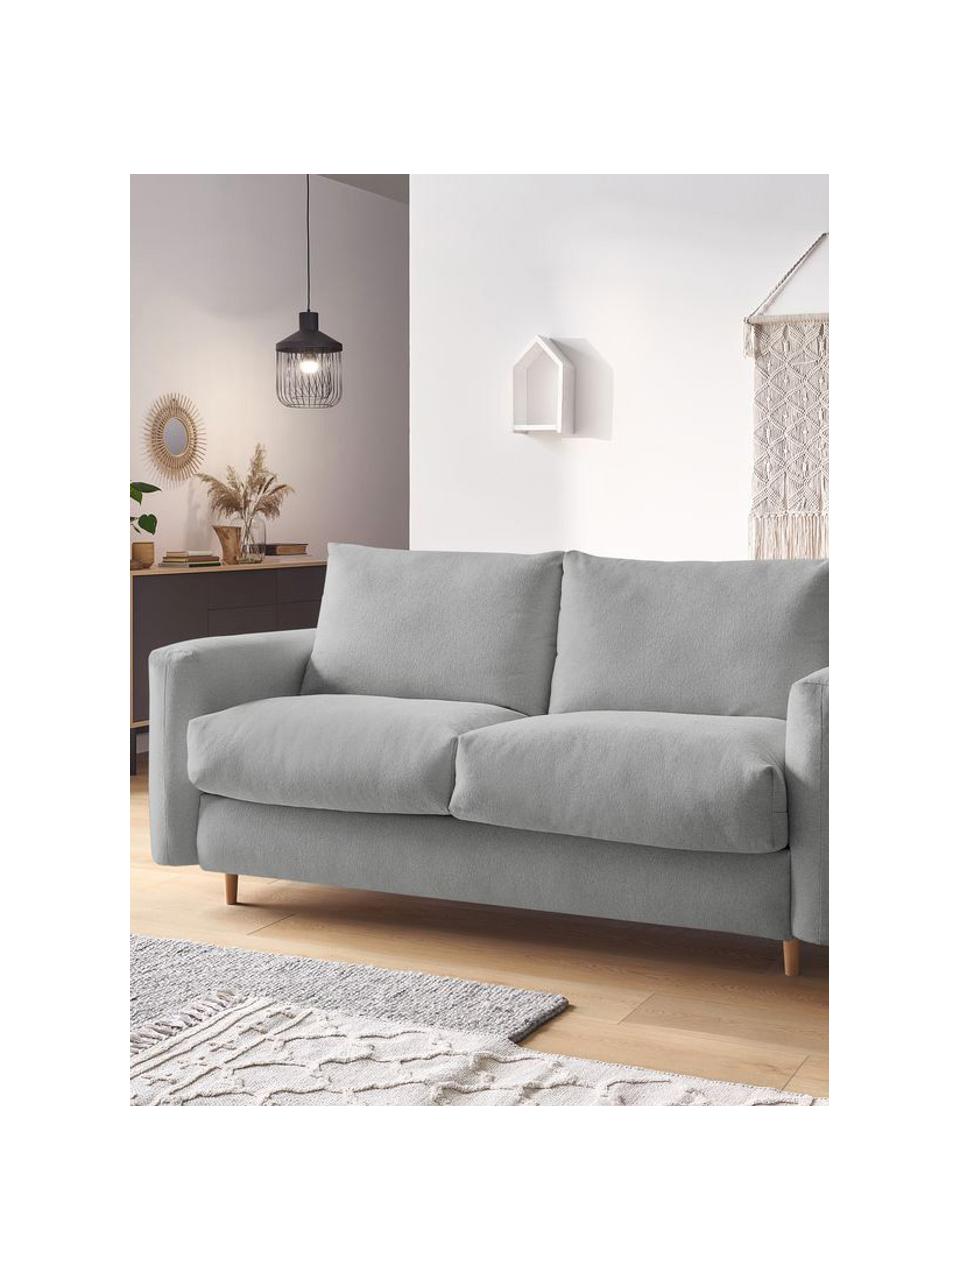 Sofa rozkładana Cocoone (3-osobowa), Tapicerka: 100% poliester, Nogi: drewno bukowe, Jasny szary, S 105 x G 200 cm